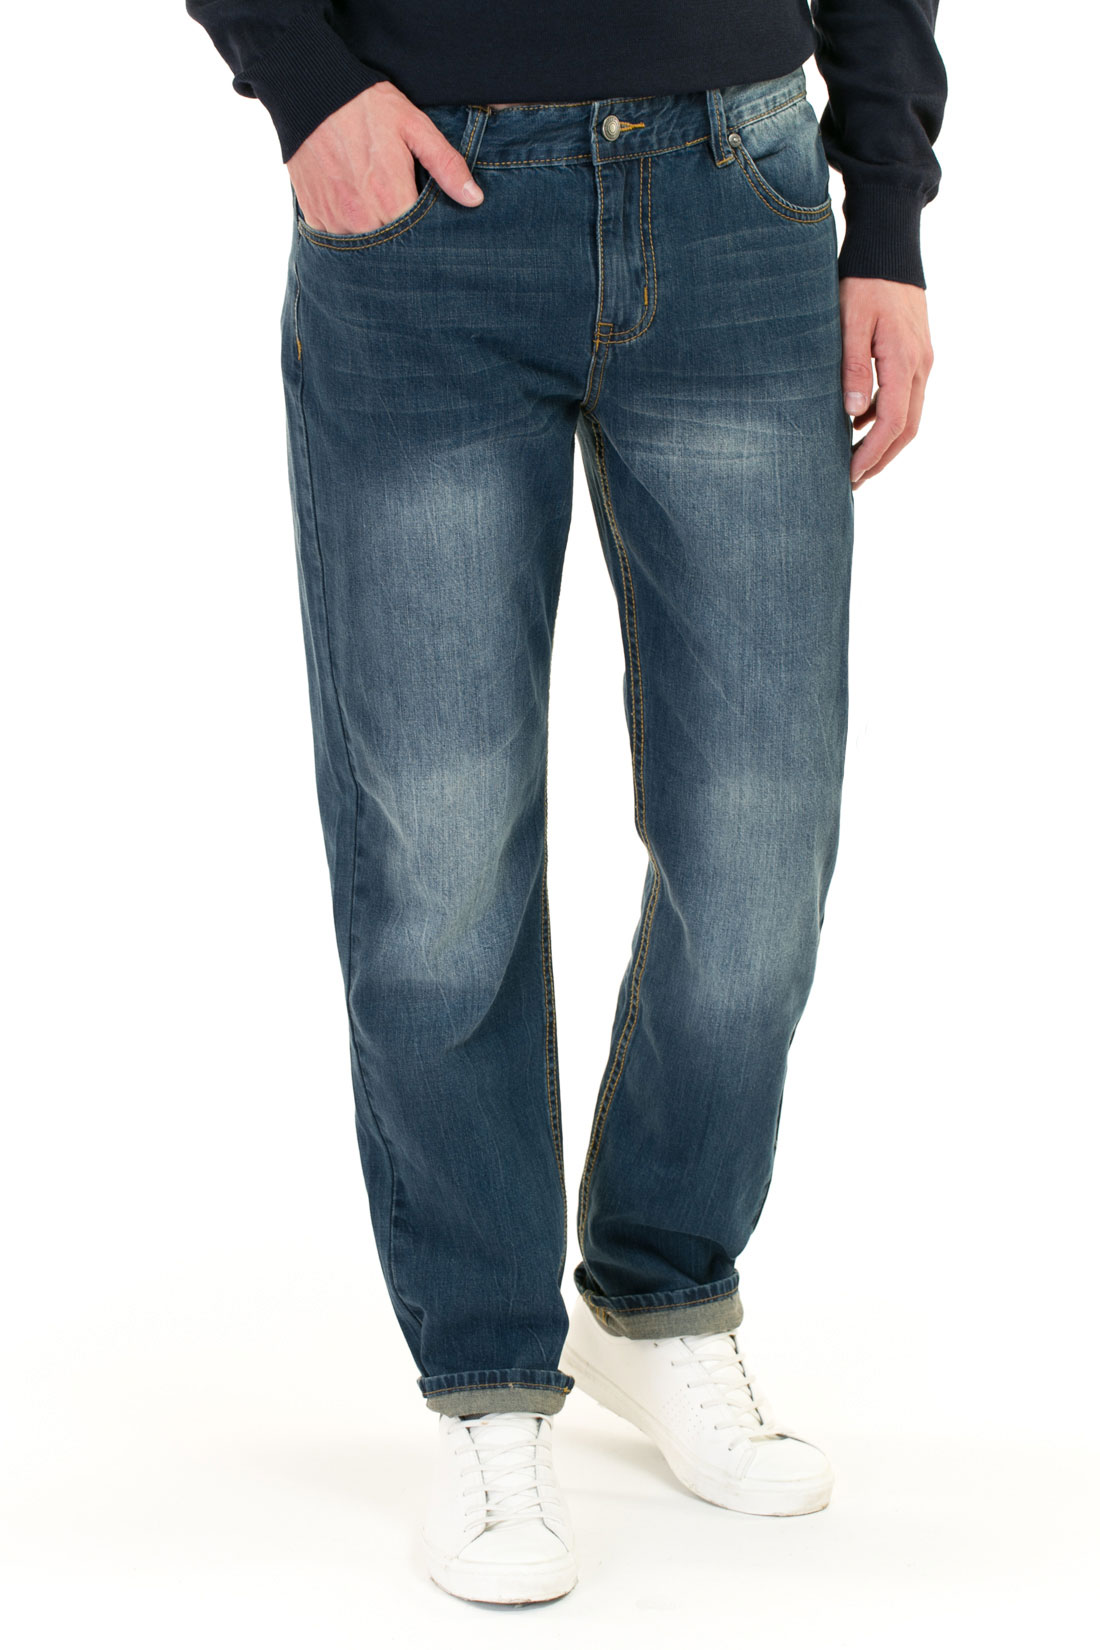 Прямые джинсы с потёртостями (арт. baon B807002), размер 32, цвет blue denim#голубой